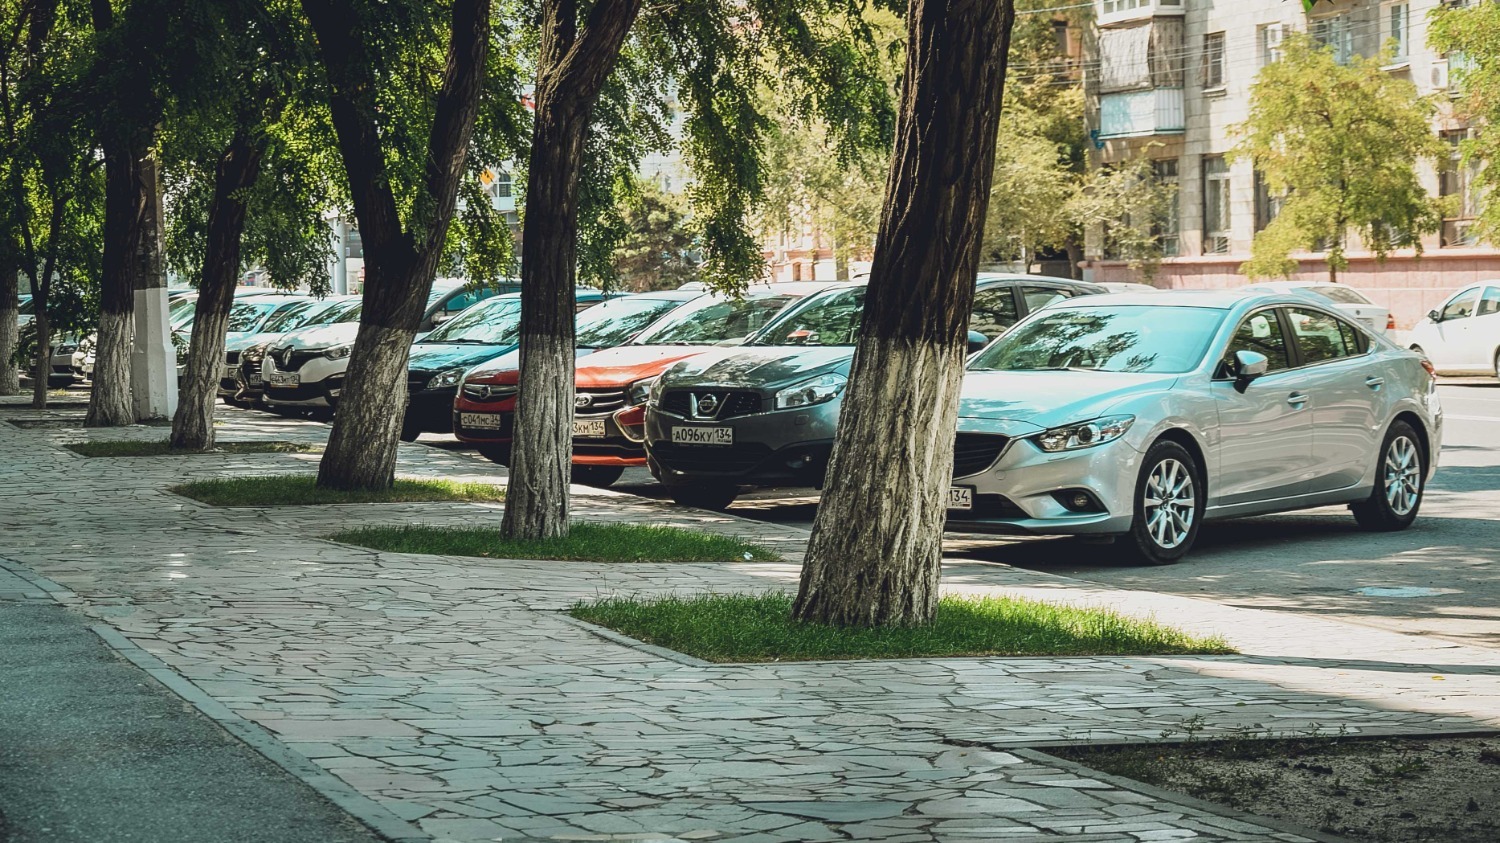 40 рублей за 1 час - такую стоимость платных парковок ожидают в Волгограде